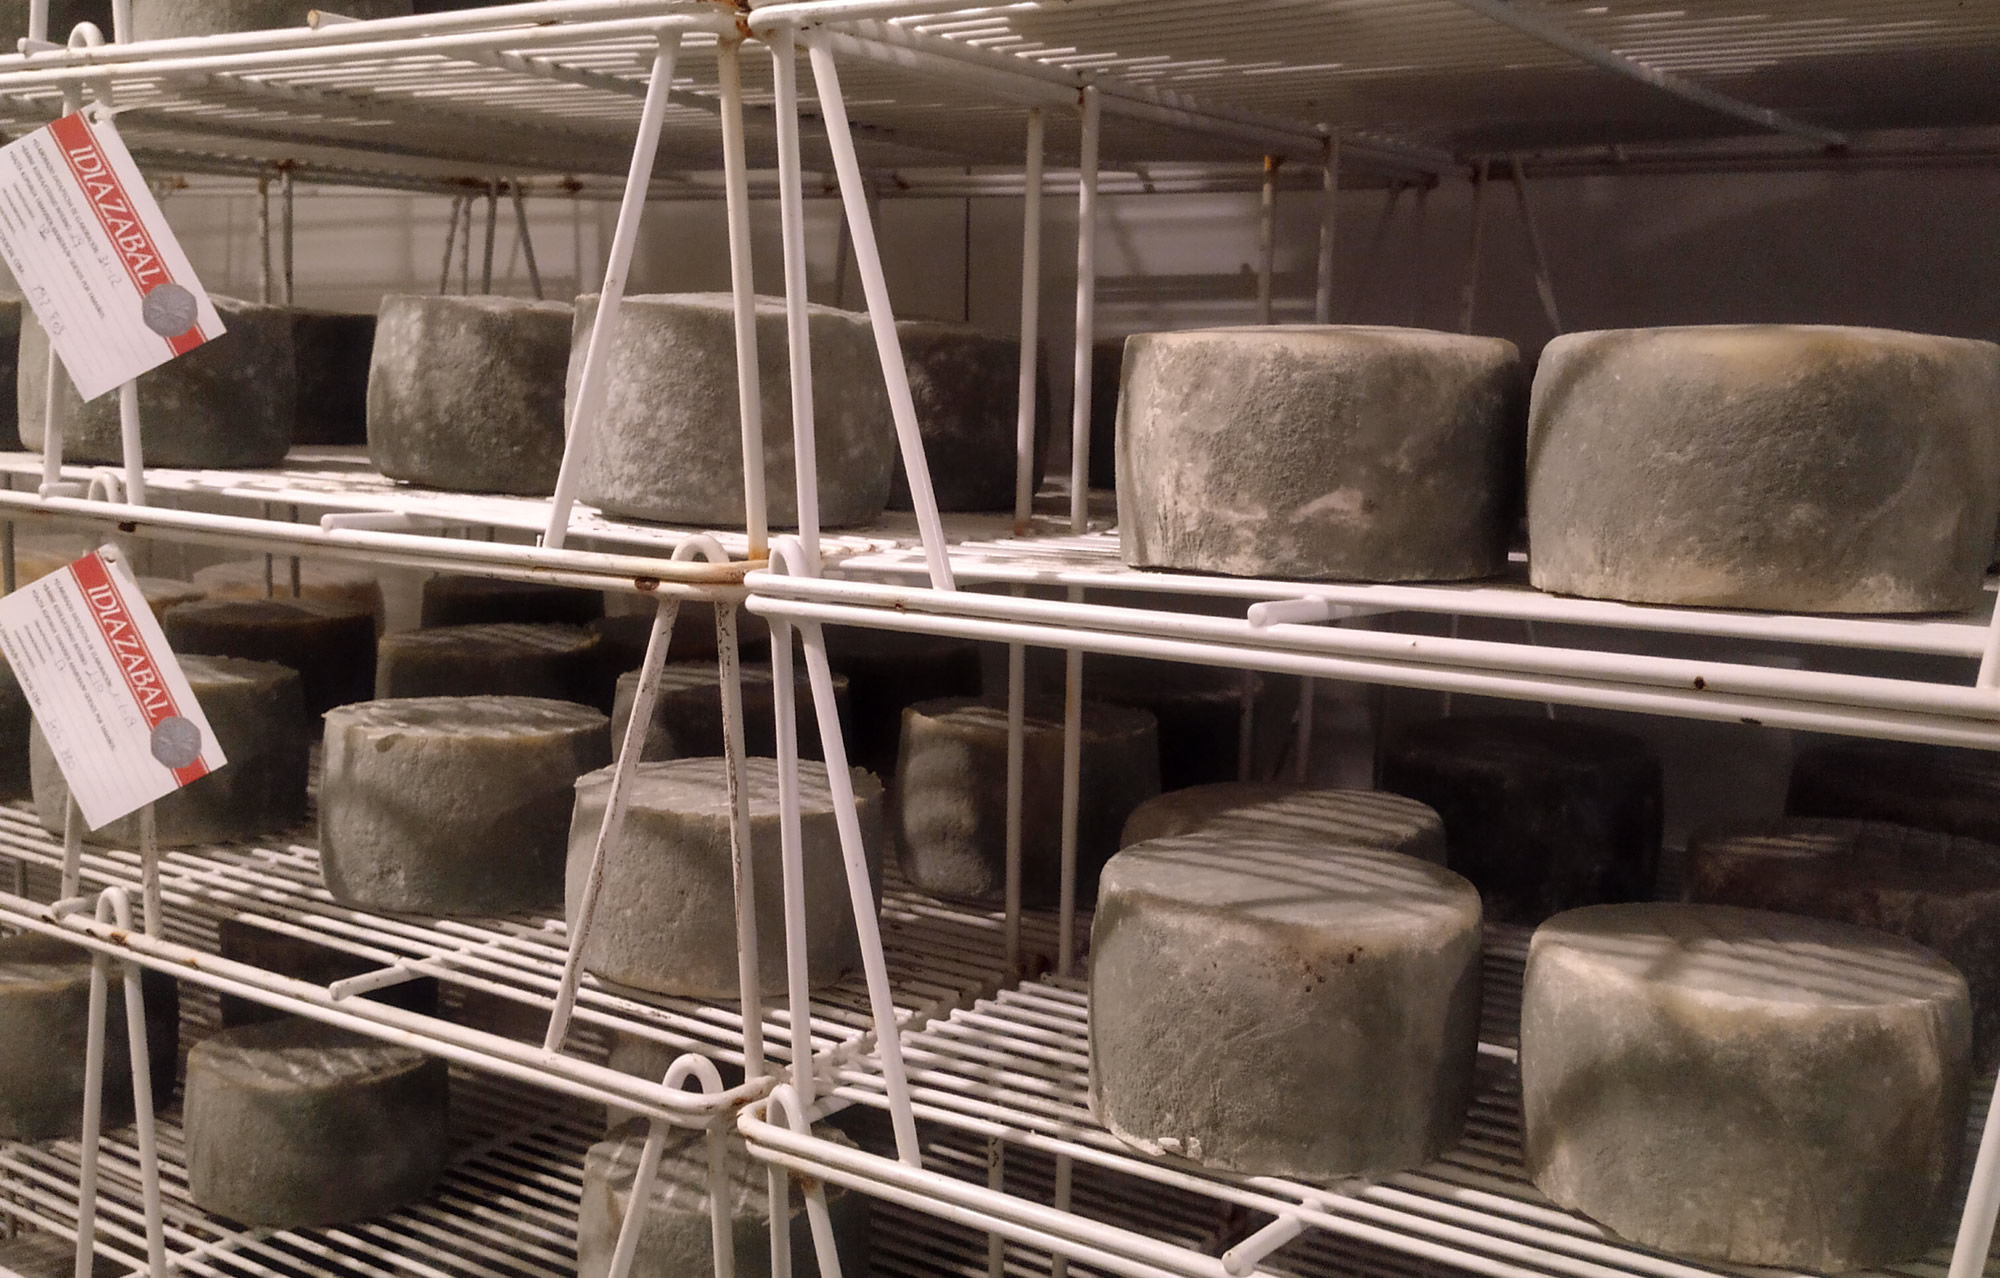 Aprende a elaborar queso de manera tradicional, en nuestra quesería te enseñaremos cómo elaboramos diferentes variedades de queso